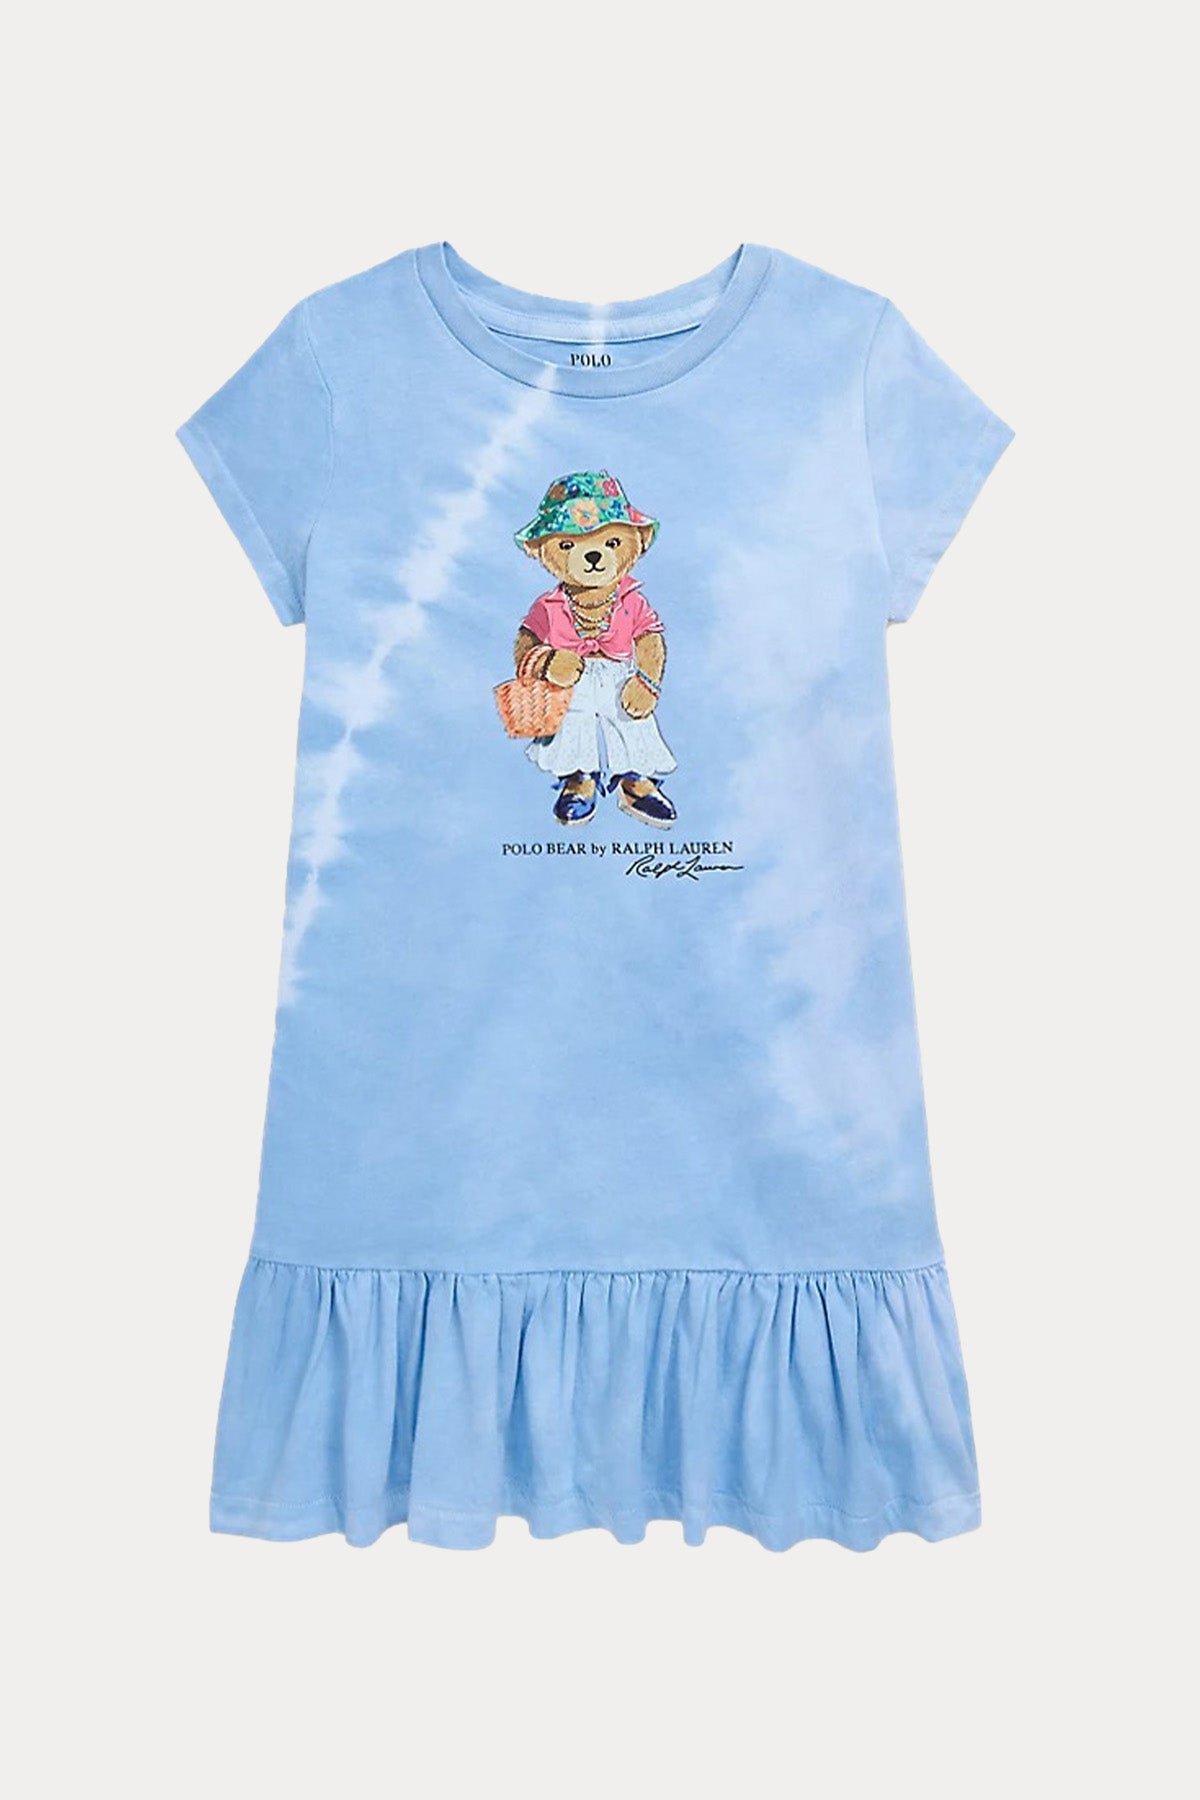 Polo Ralph Lauren Kids 2-4 Yaş Kız Çocuk Polo Bear Elbise